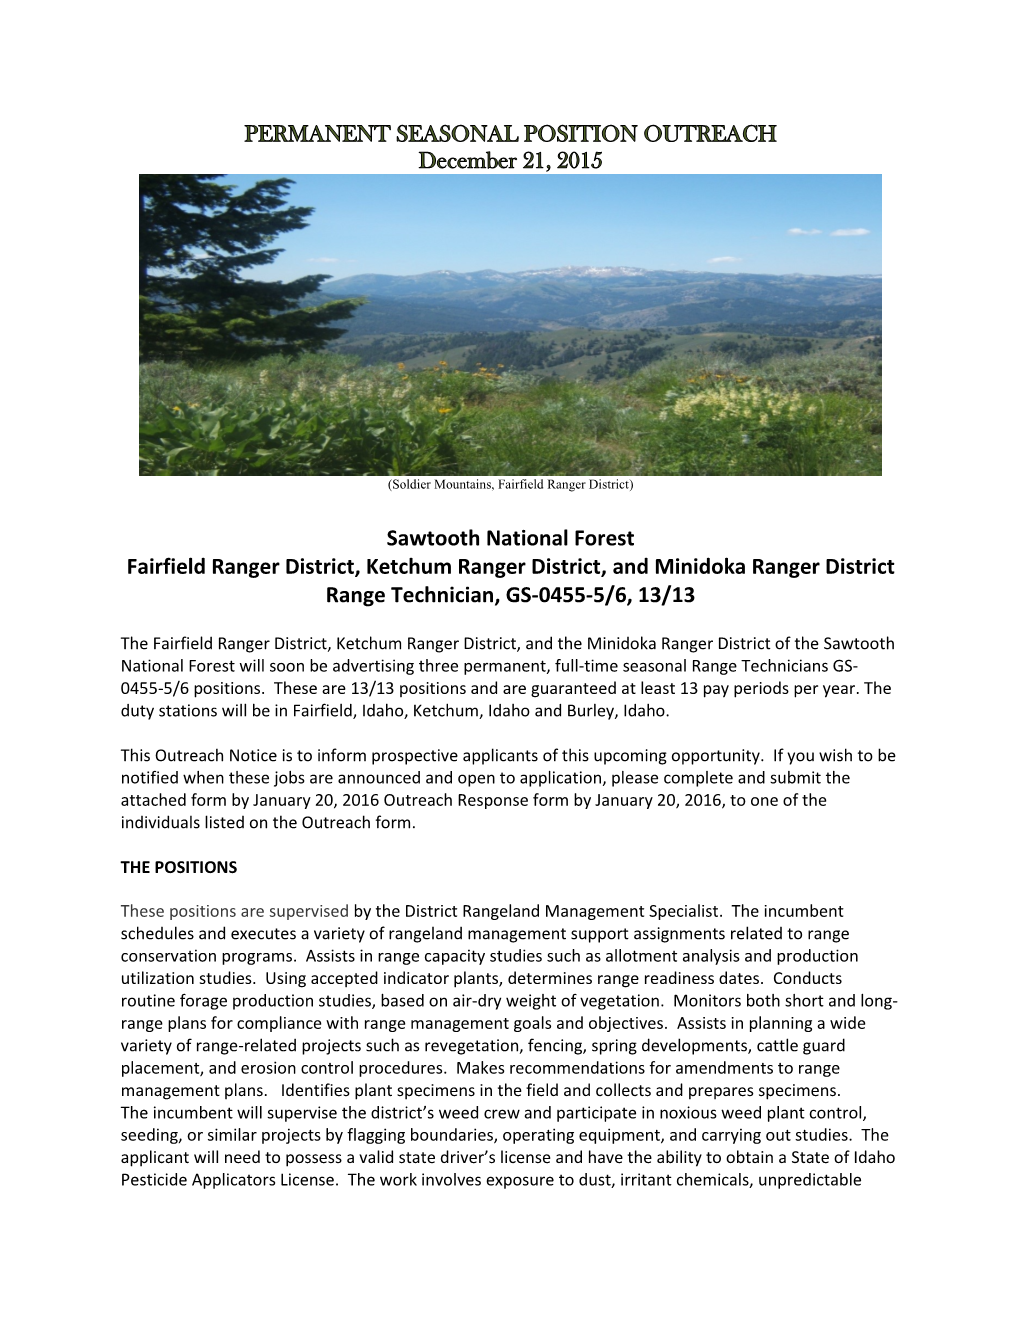 Sawtooth National Forest Fairfield Ranger District, Ketchum Ranger District, and Minidoka Ranger District Range Technician, GS-0455-5/6, 13/13